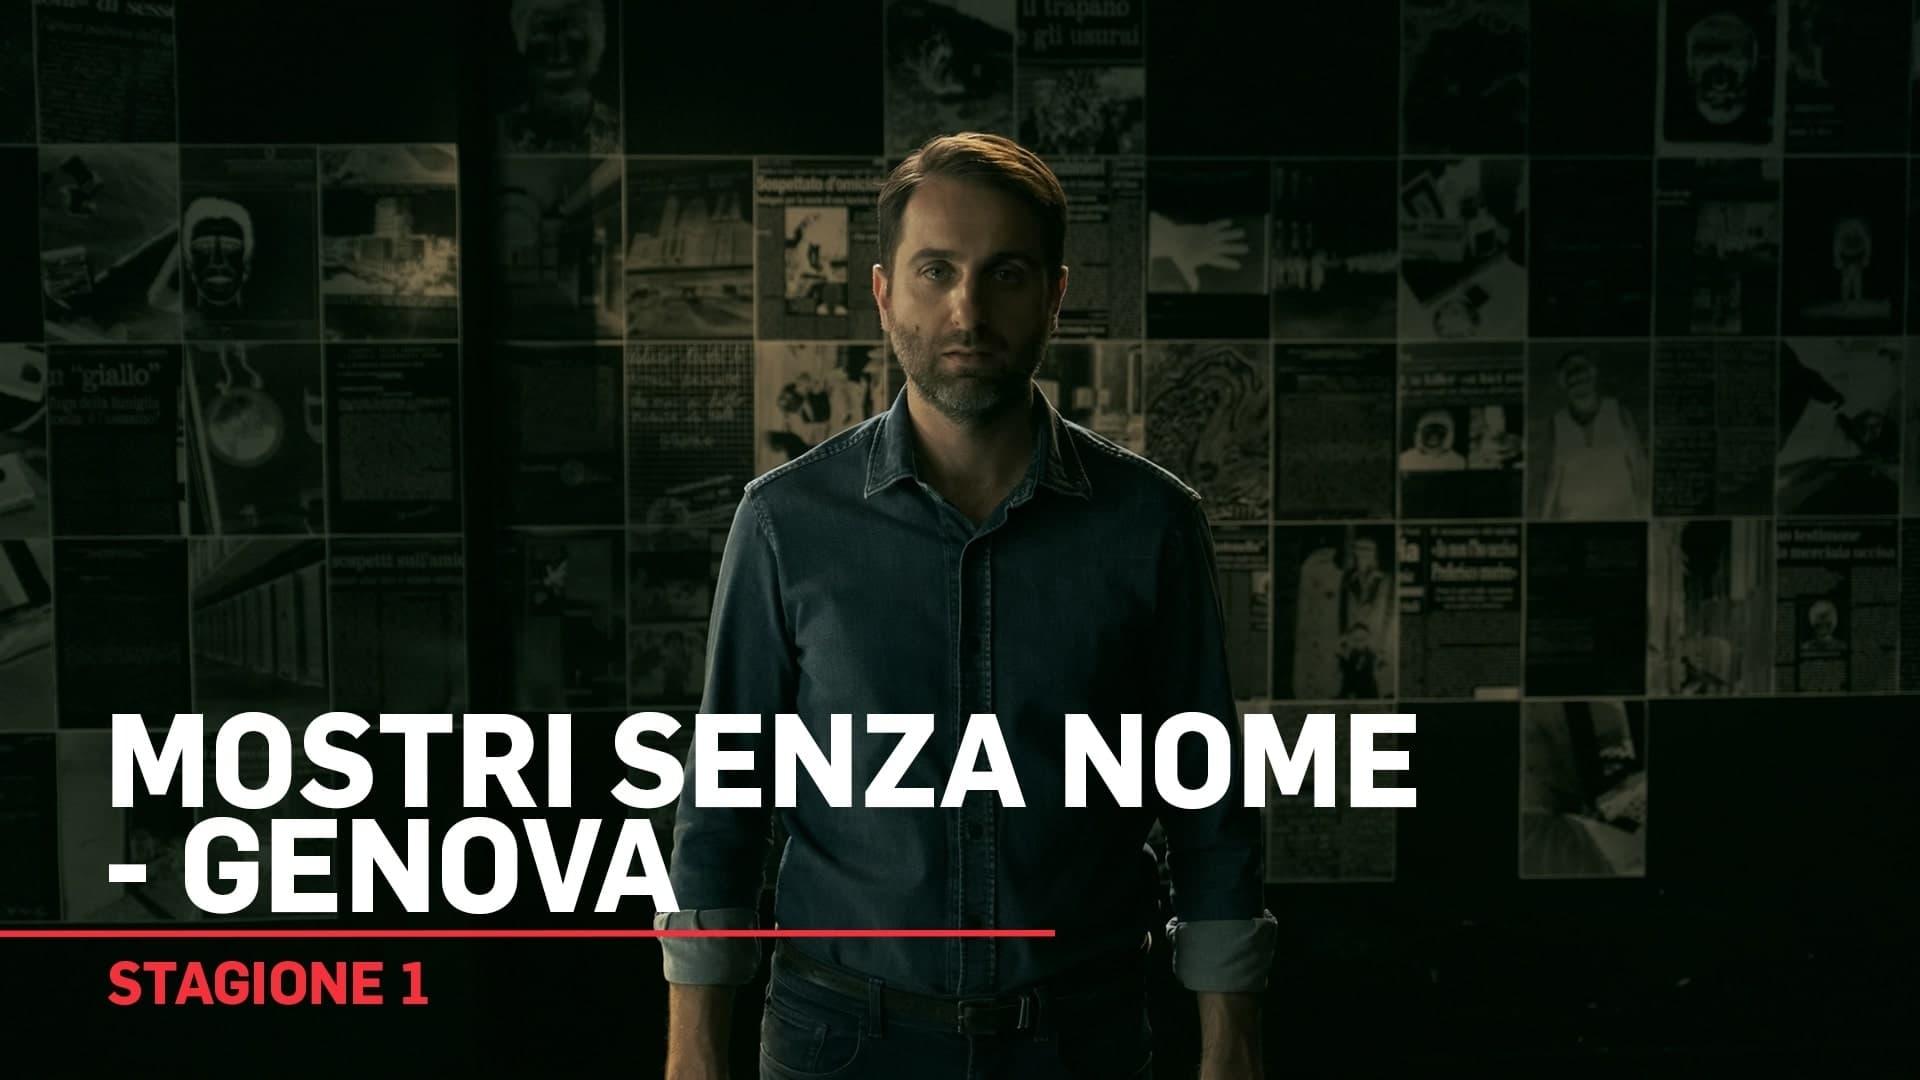 Mostri senza nome - Genova backdrop